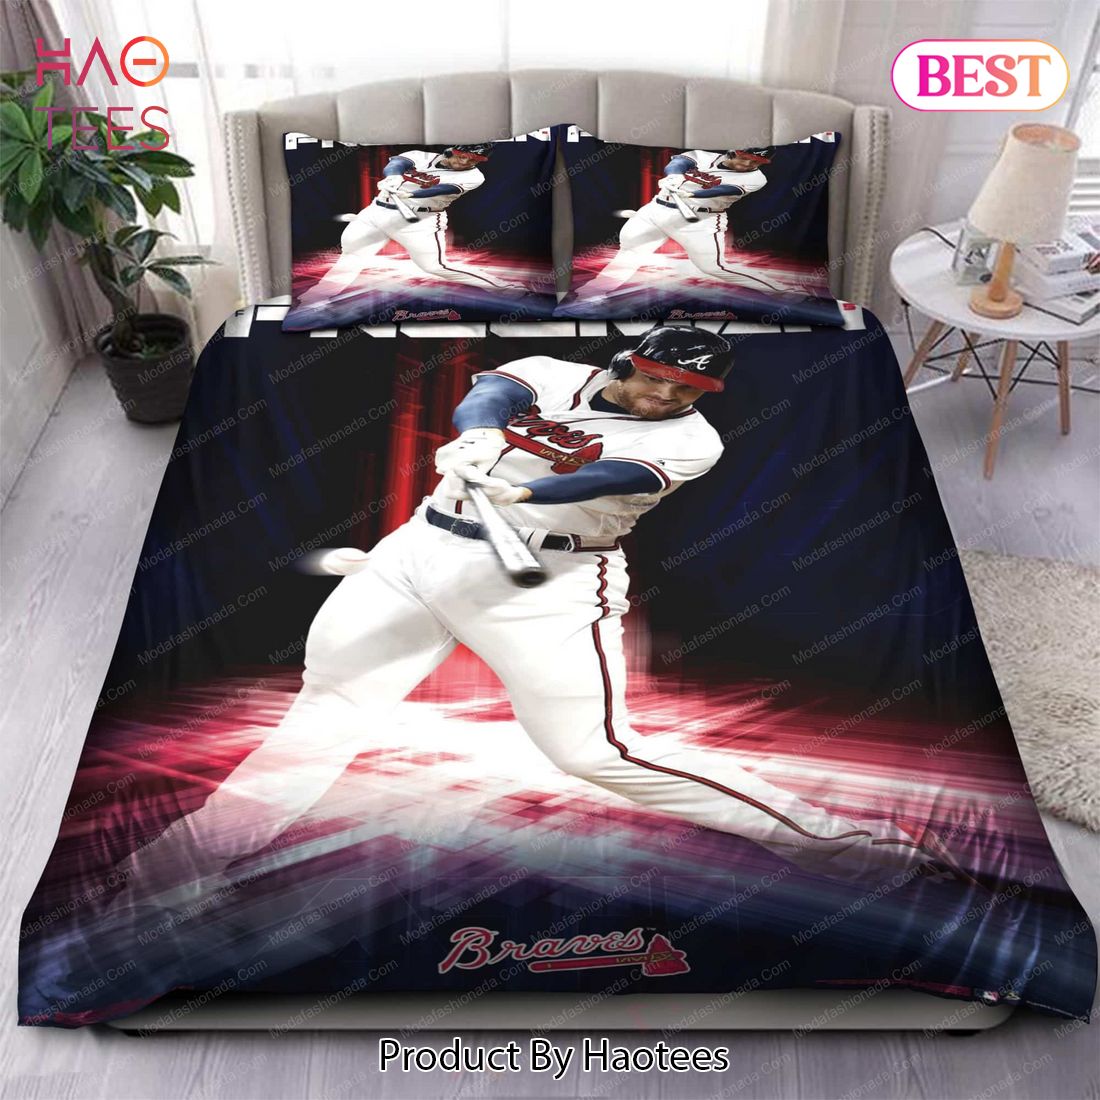 Buy Memory Freddie Freeman Atlanta Braves MLB 44 Bedding Sets Bed Sets, Bedroom Sets, Comforter Sets, Duvet Cover, Bedspread